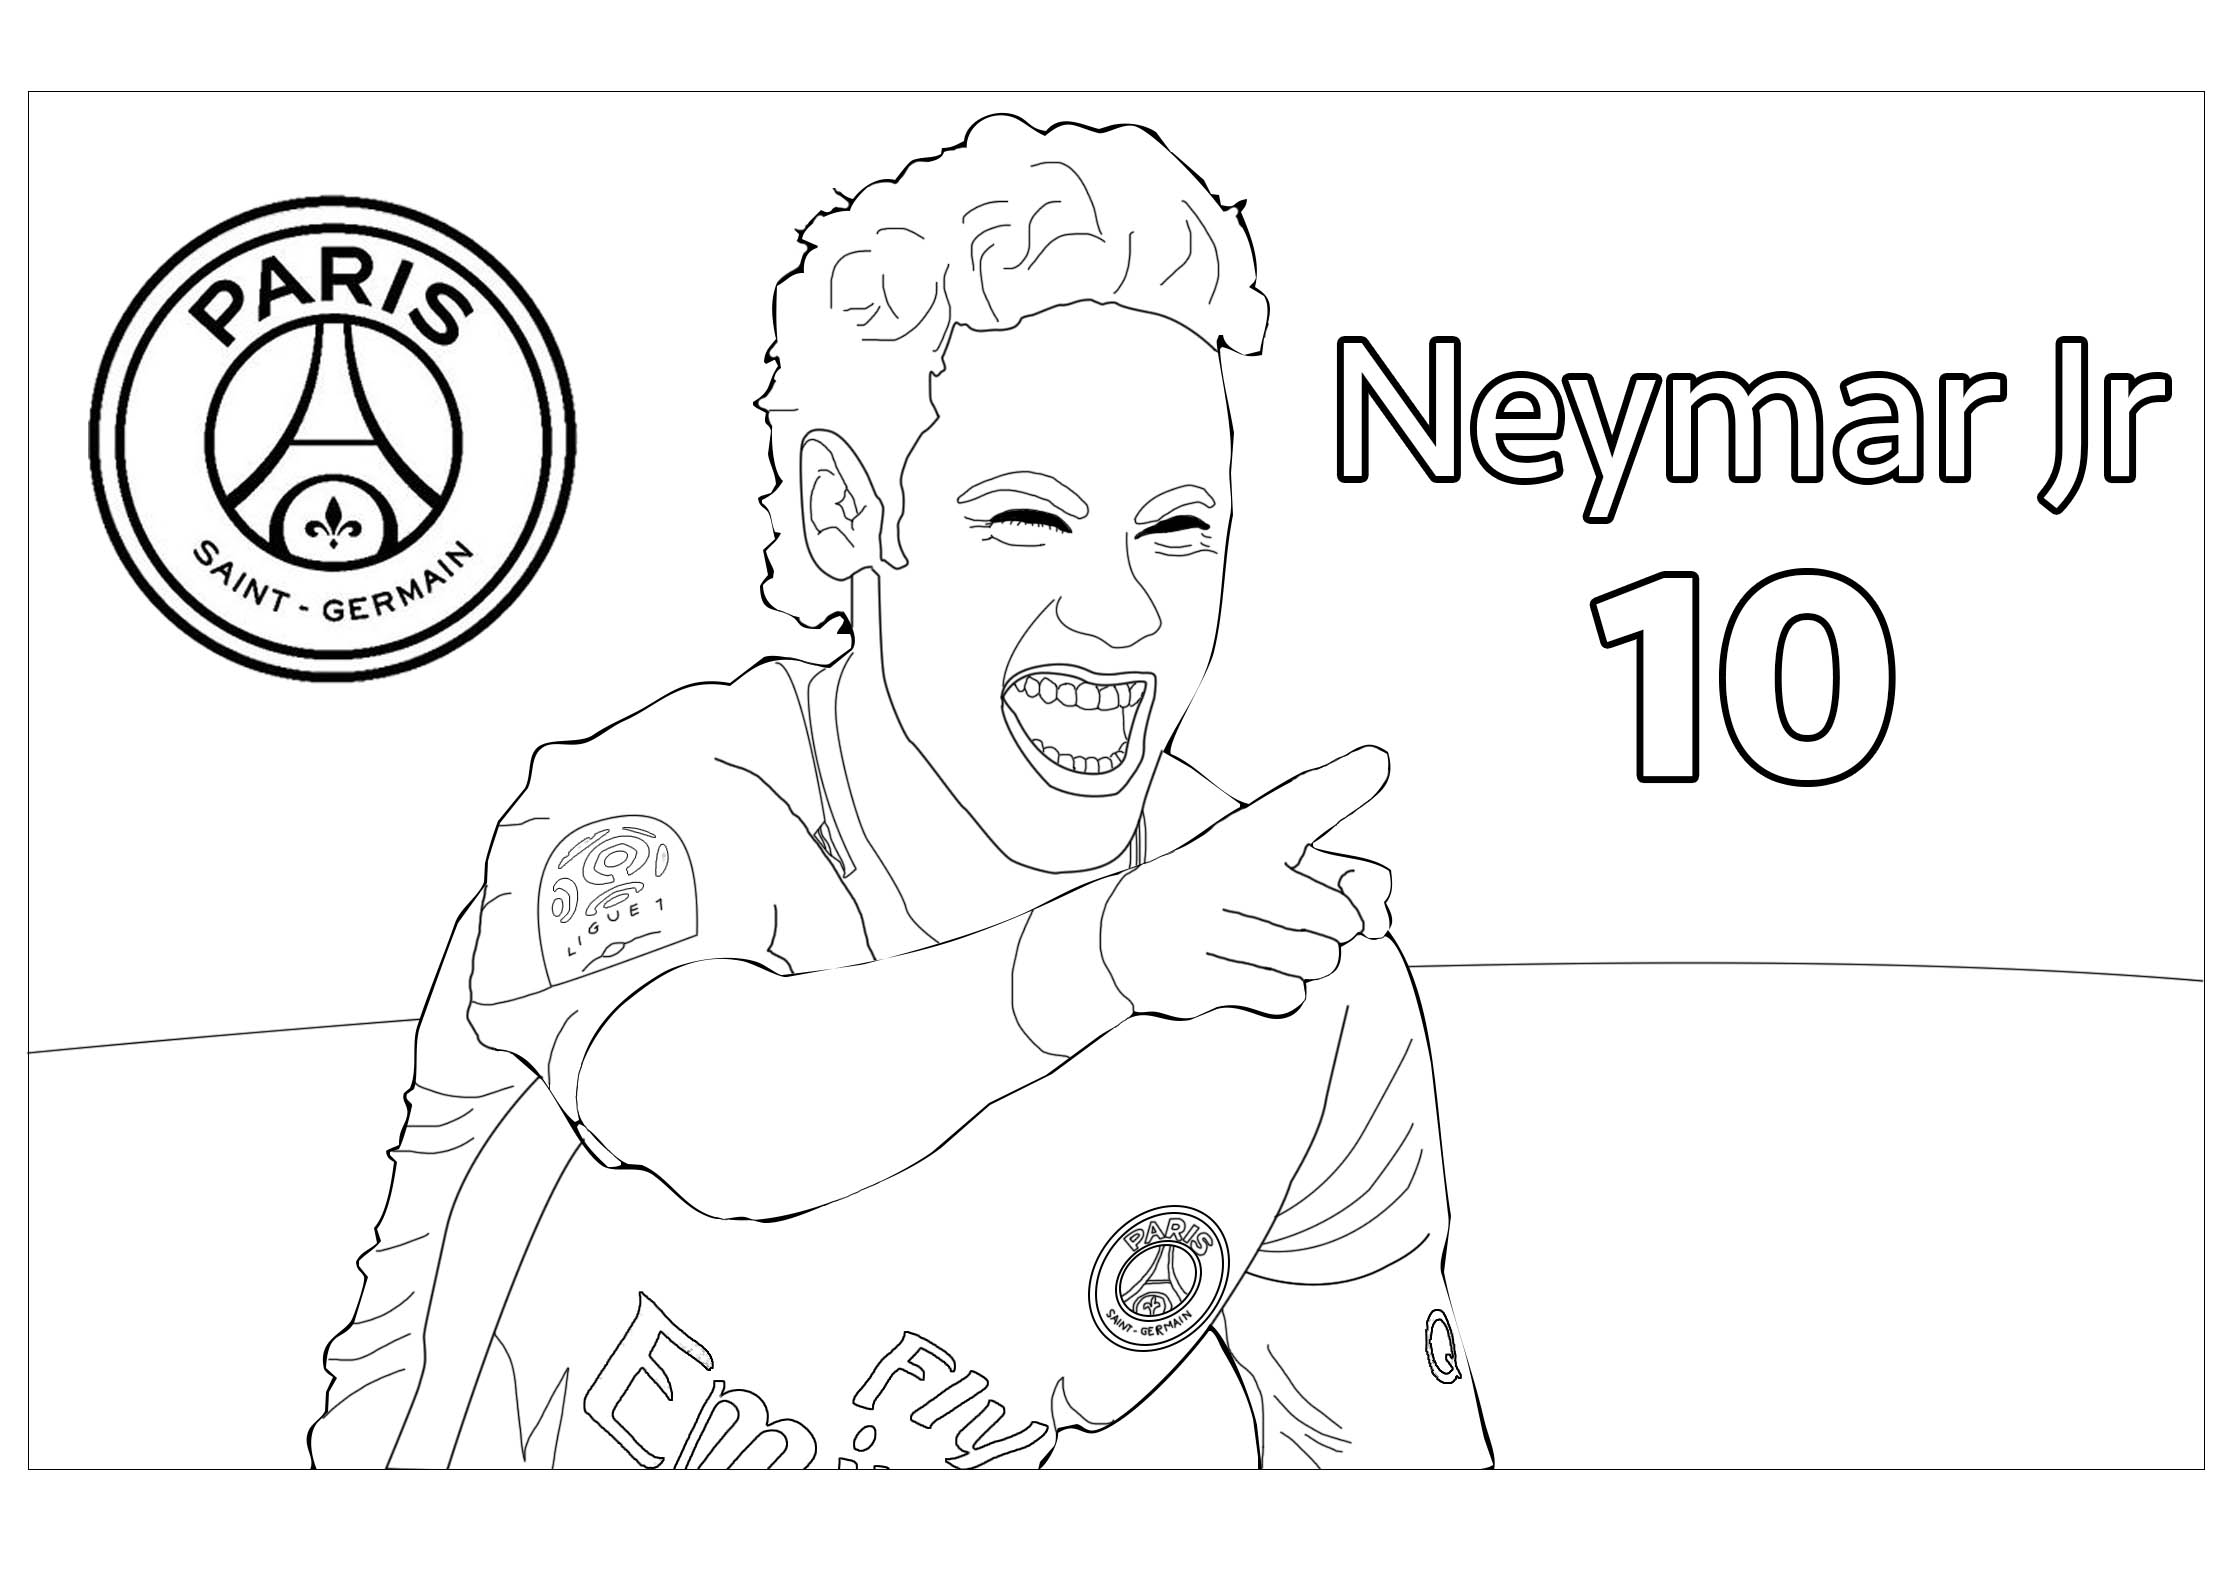 Coloreado de Neymar Jr, con el logotipo del PSG